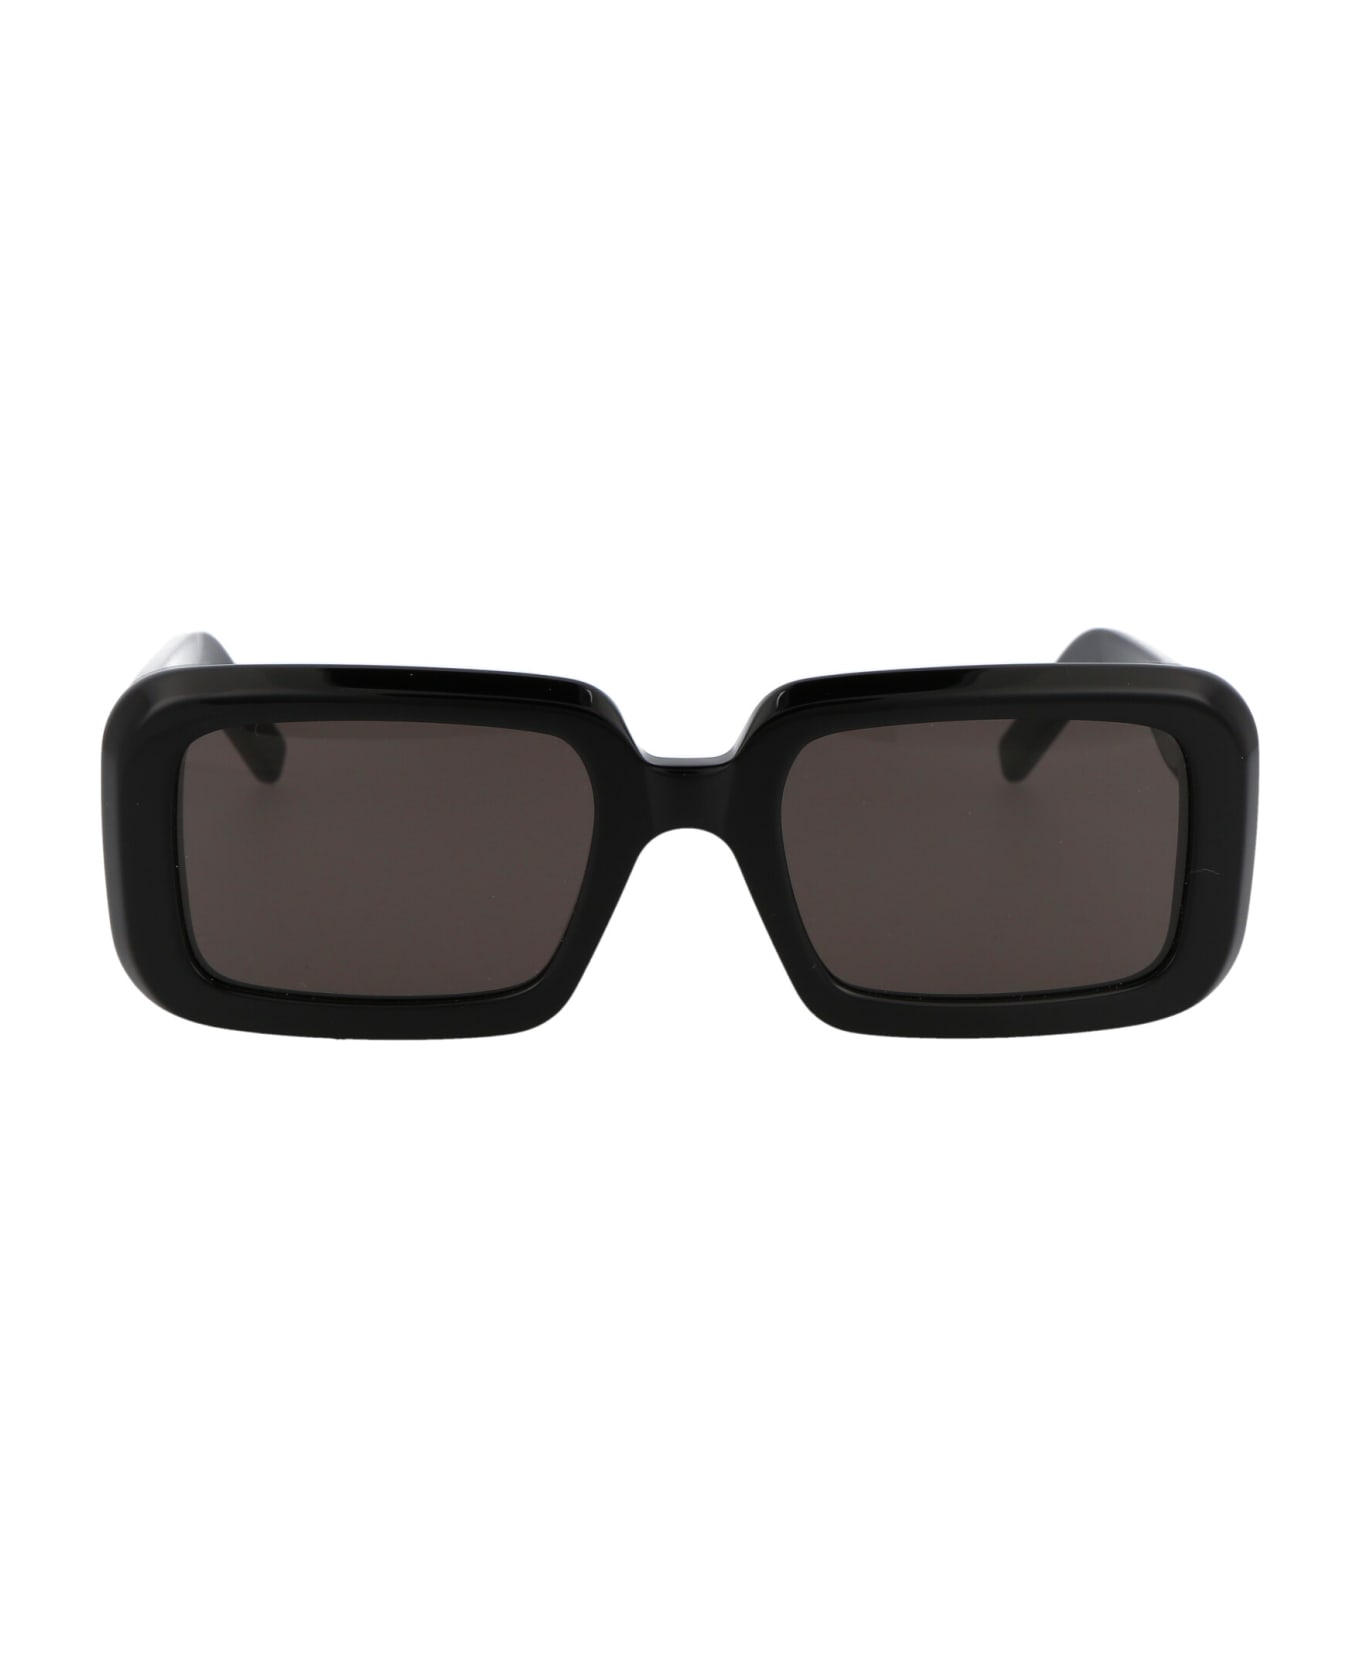 Saint Laurent Eyewear Sl 534 Sunrise Sunglasses - 001 BLACK BLACK BLACK サングラス